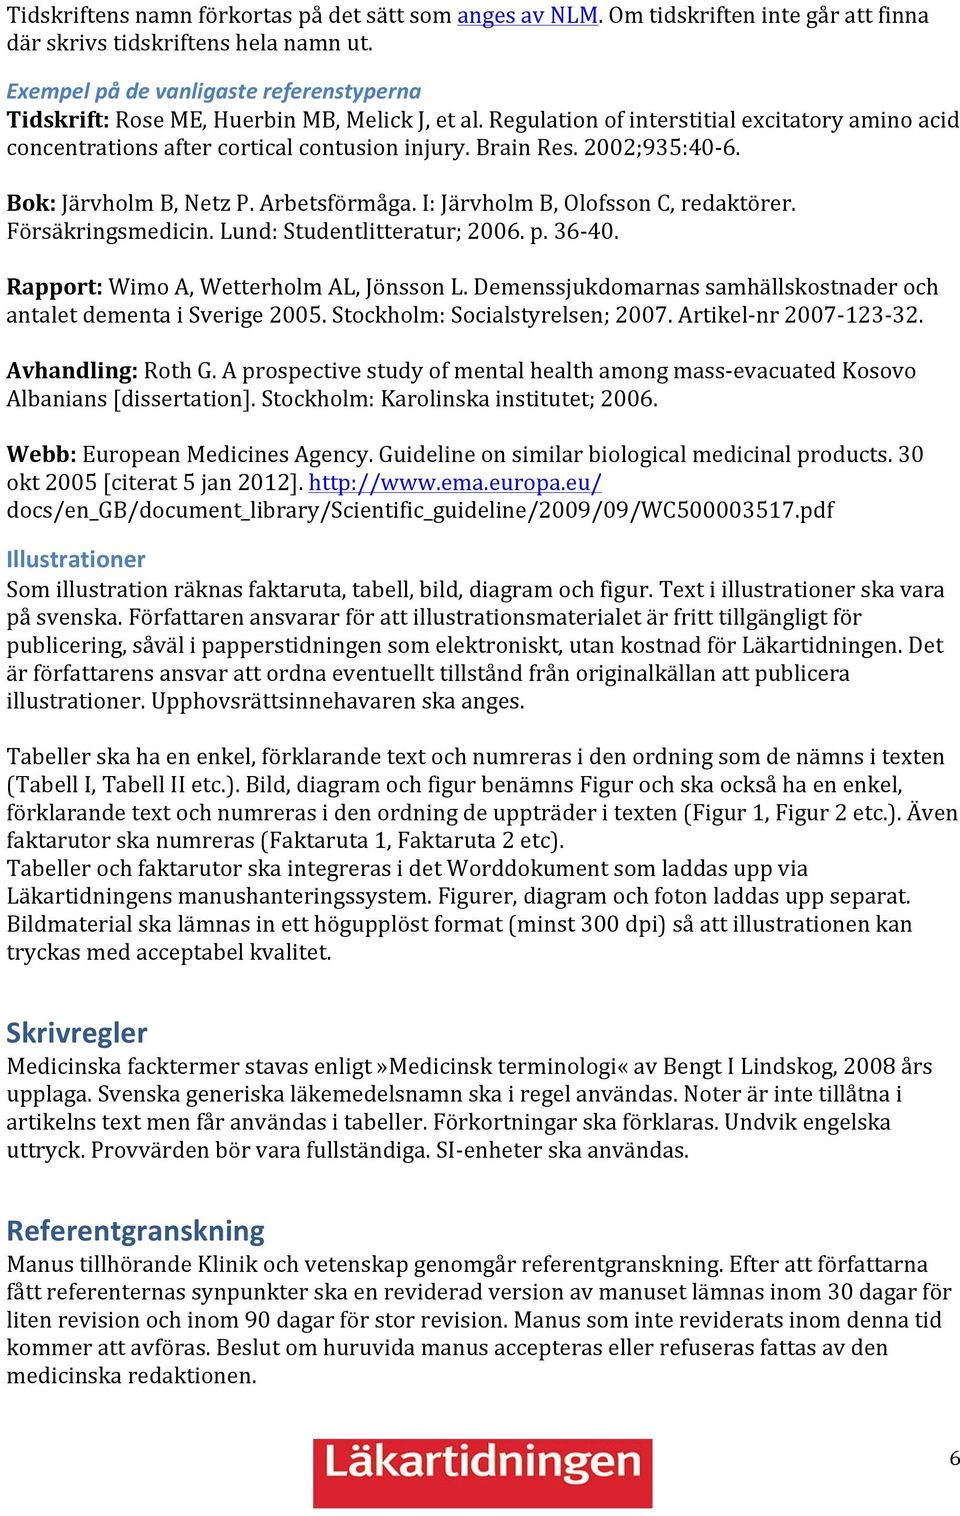 00;9:40-6. Bok: Järvholm B, Netz P. Arbetsförmåga. I: Järvholm B, Olofsson C, redaktörer. Försäkringsmedicin. Lund: Studentlitteratur; 006. p. 6-40. Rapport: Wimo A, Wetterholm AL, Jönsson L.